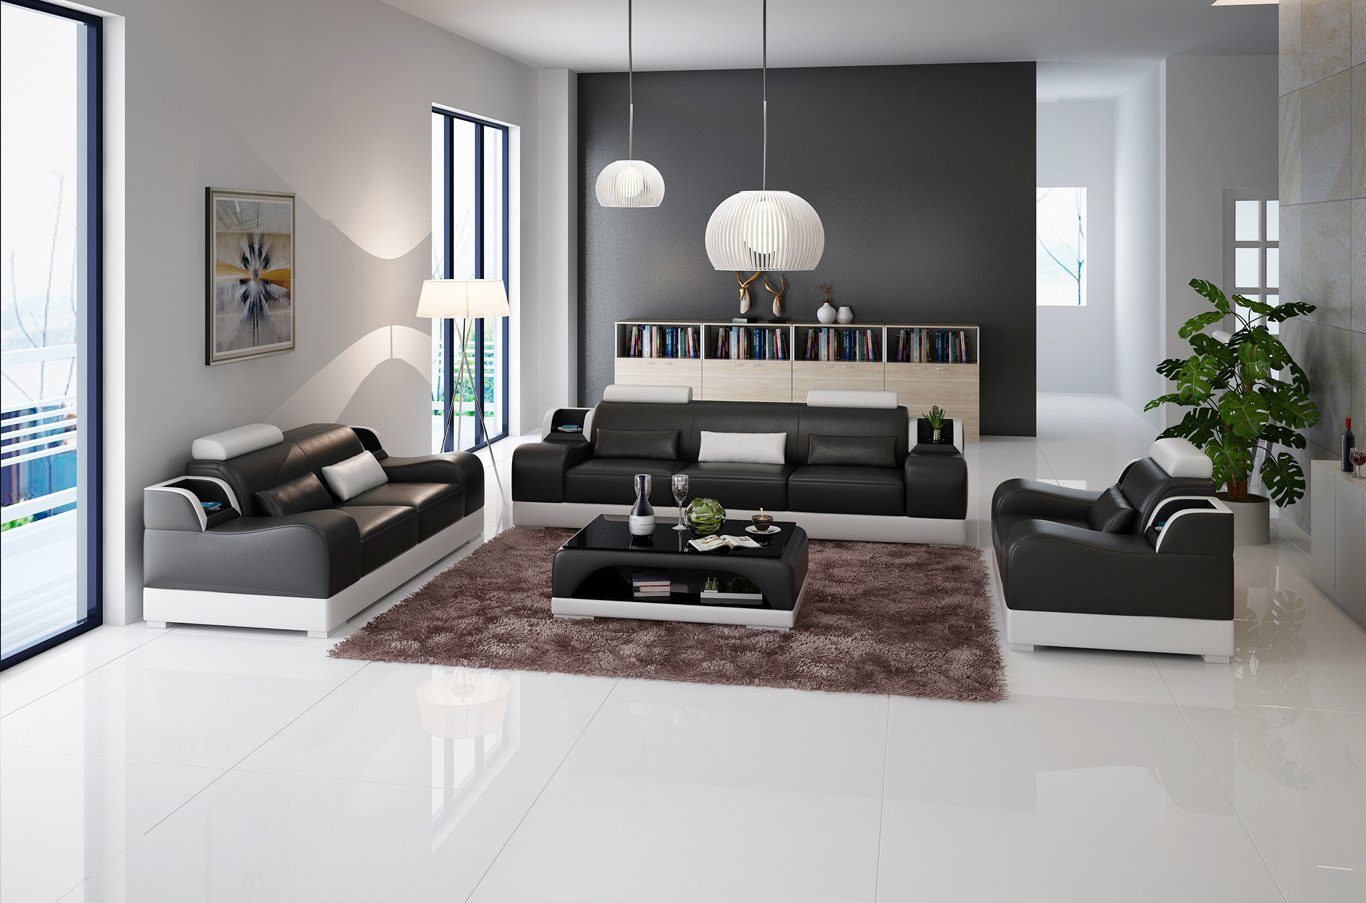 Neu, Sofa Sitzer Made Modern Set Luxus Europe Couchen JVmoebel Design Sofa Couch Schwarz/Weiß 3+2+2 in Polster